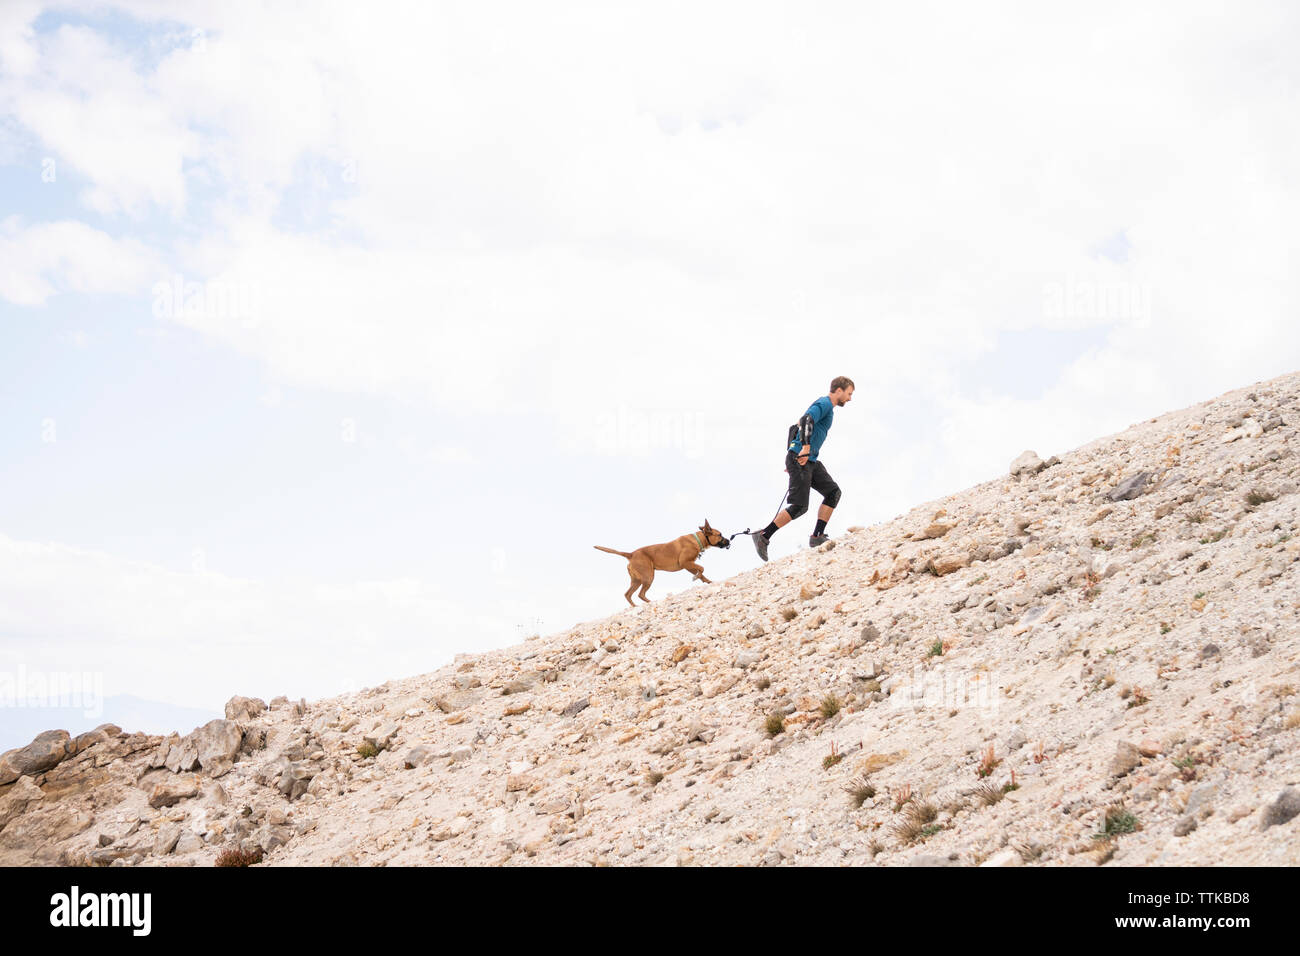 El hombre con el perro corriendo en la montaña contra el cielo nublado Foto de stock